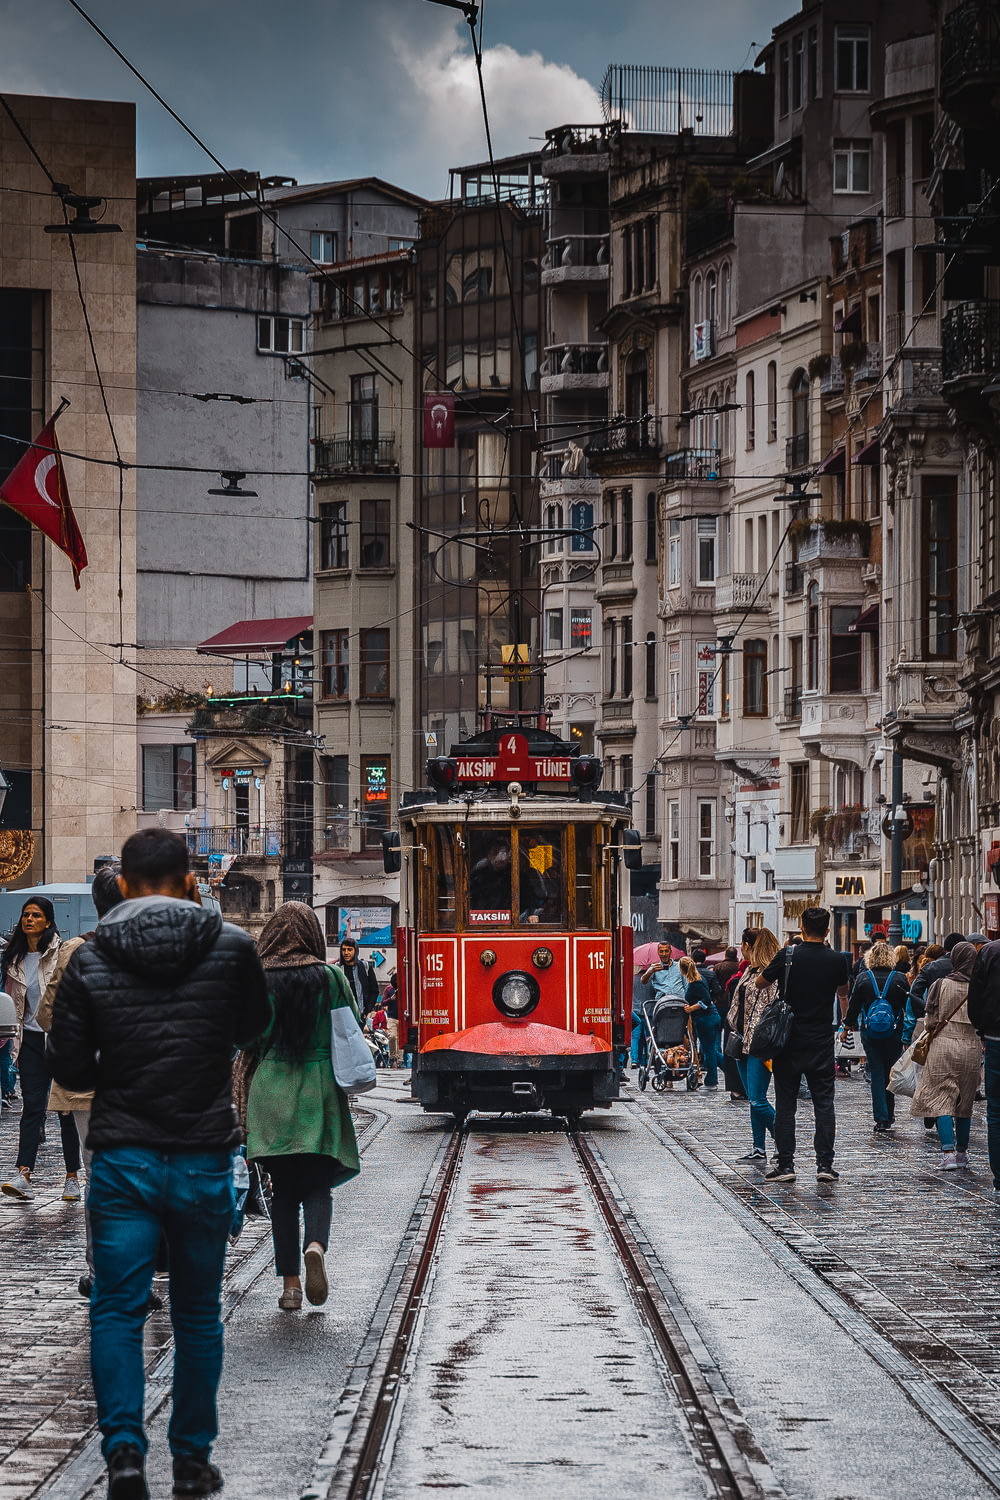 people walking on street near red tram during daytime